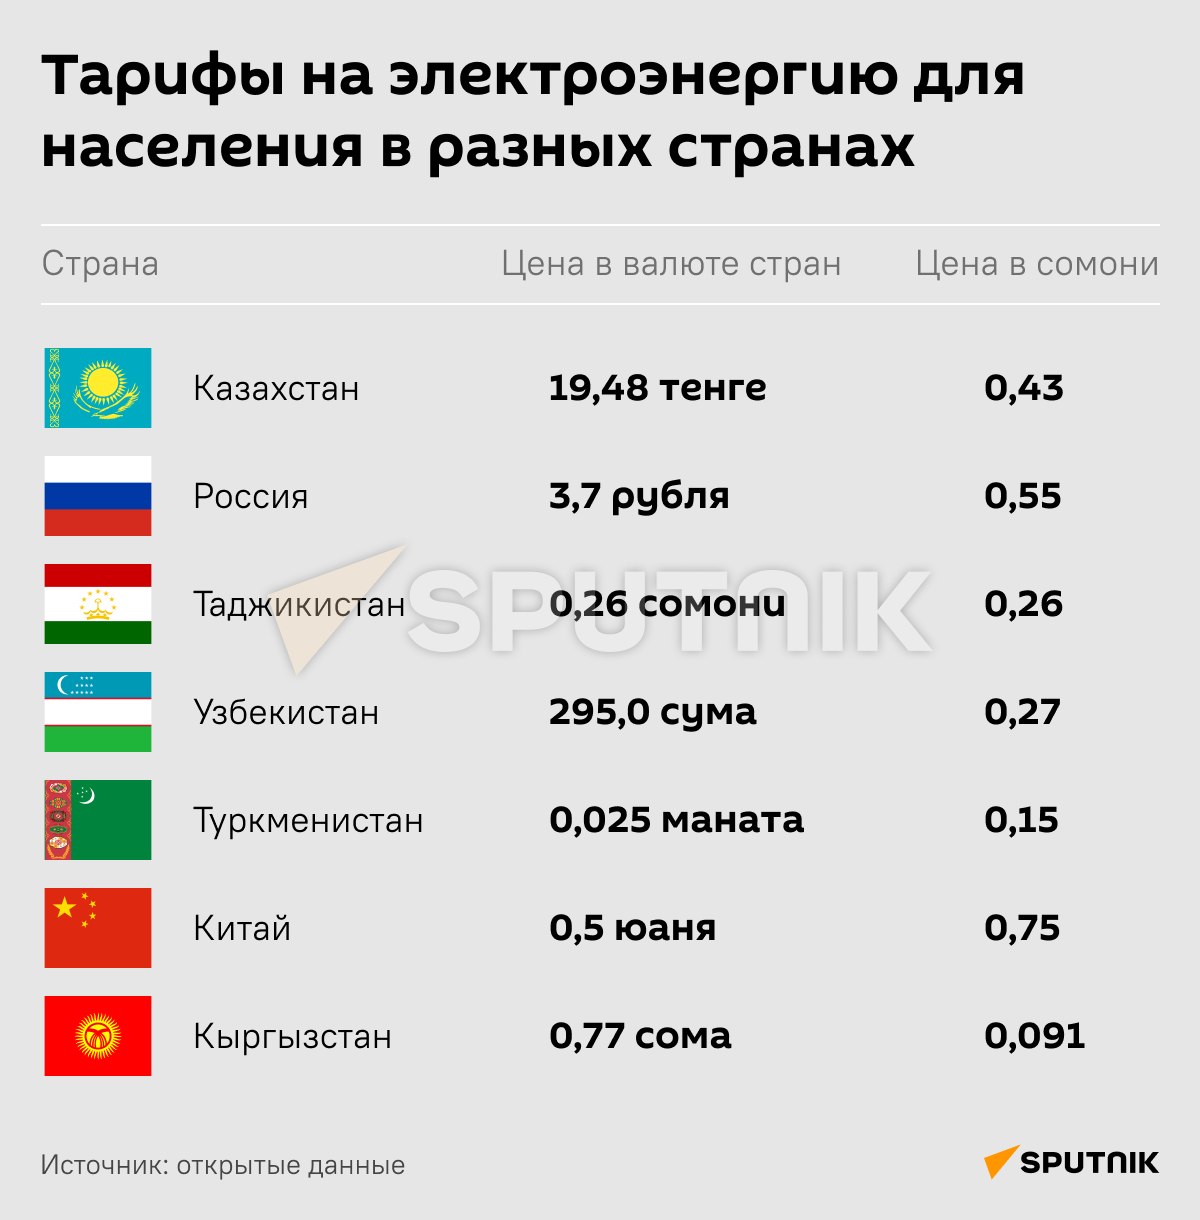 Тарифы на электроэнергию для населения в разных странах - Sputnik Таджикистан